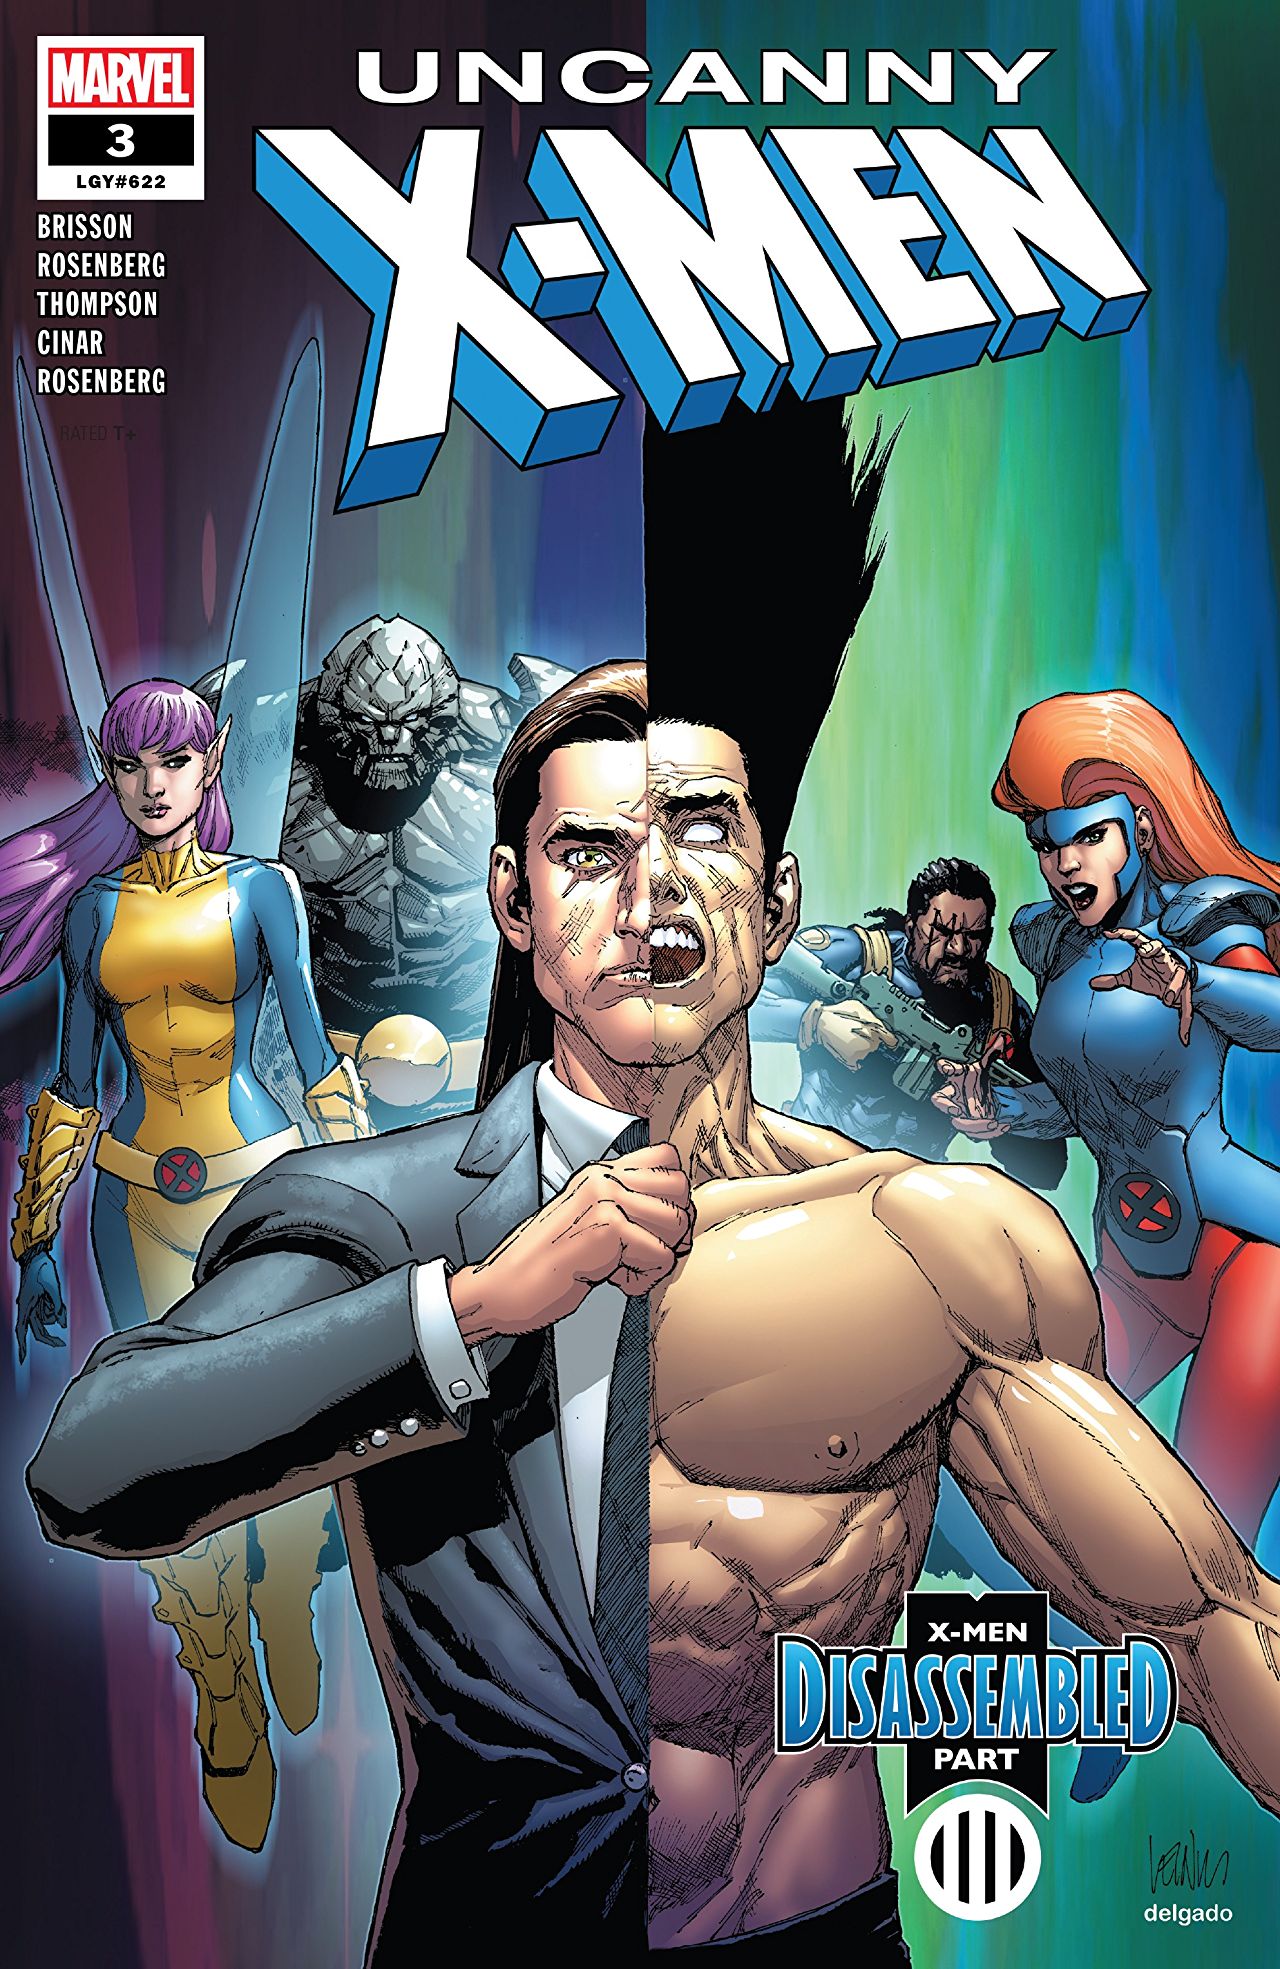 Uncanny X-Men #3 review